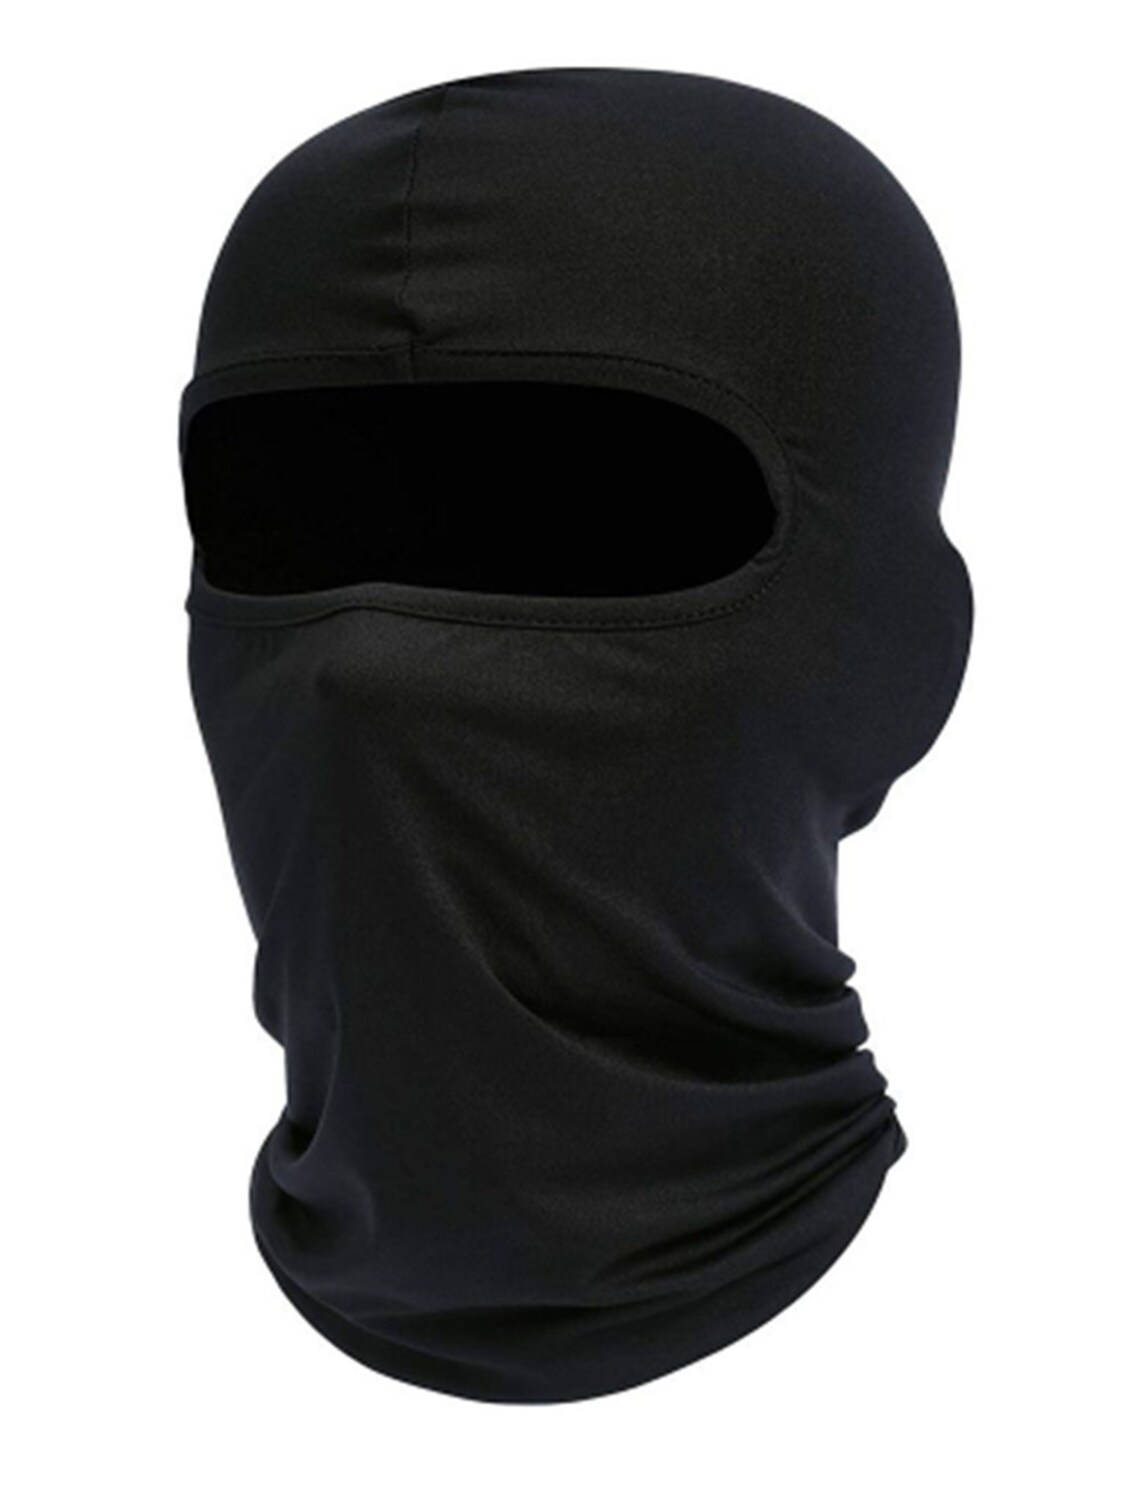 En sort balaclava med en sort ansigtsmaske Wallpaper